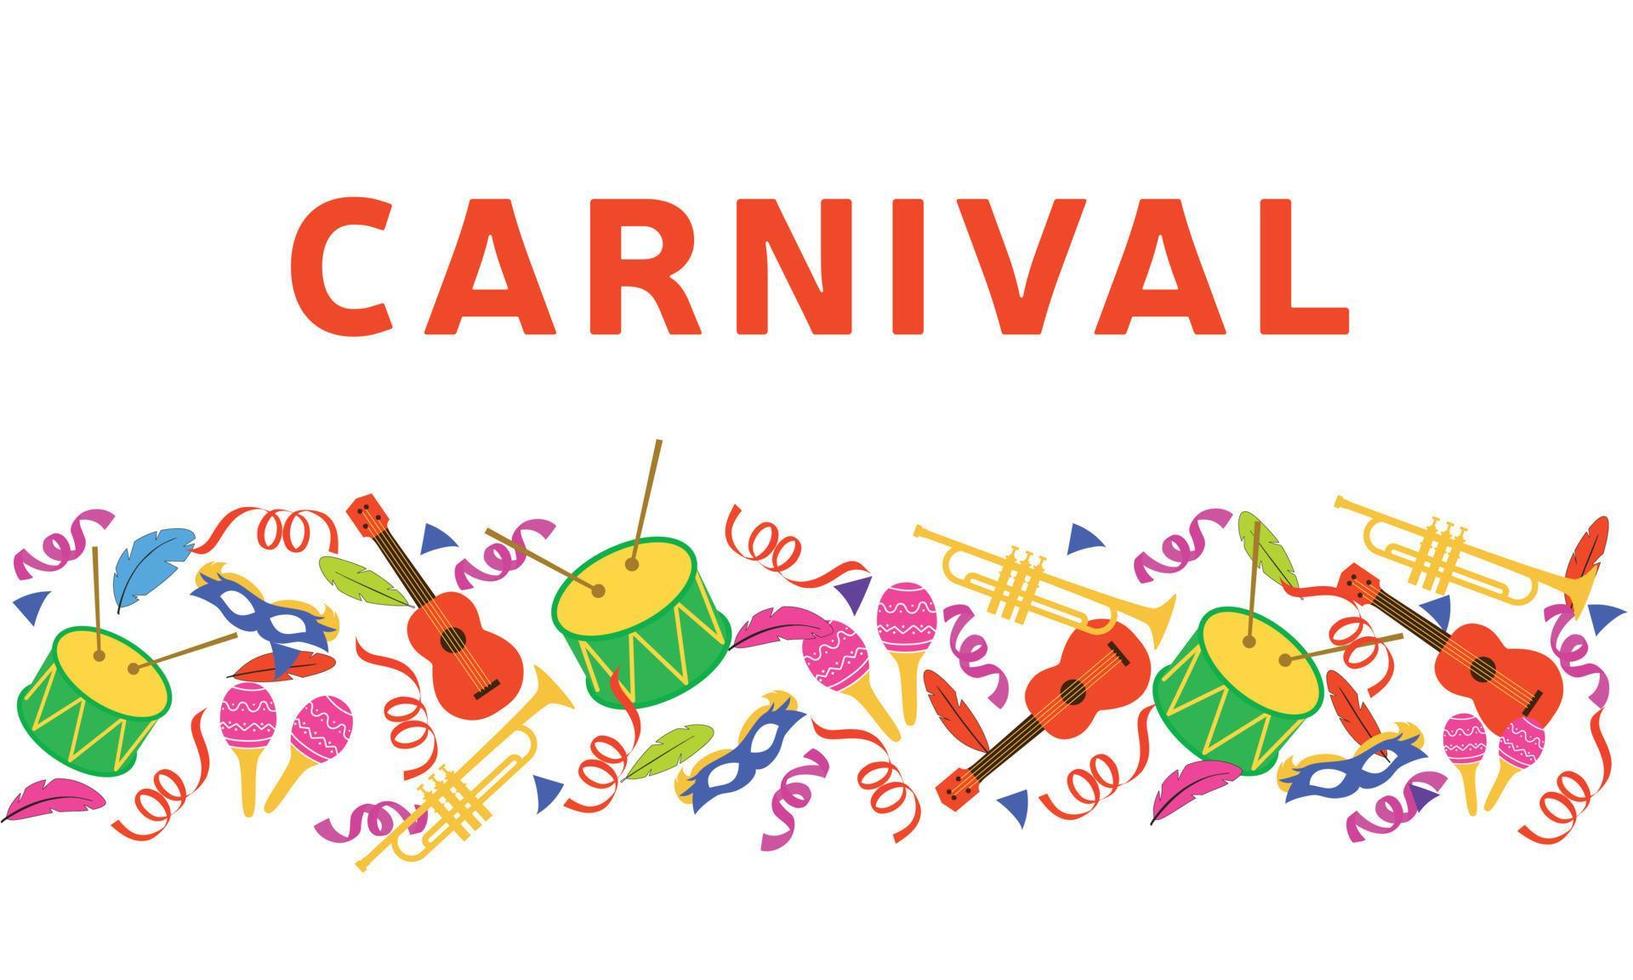 carnaval de banner com muitos instrumentos musicais. tambor, cavaquinho, trompete, maracas. ilustração vetorial. vetor